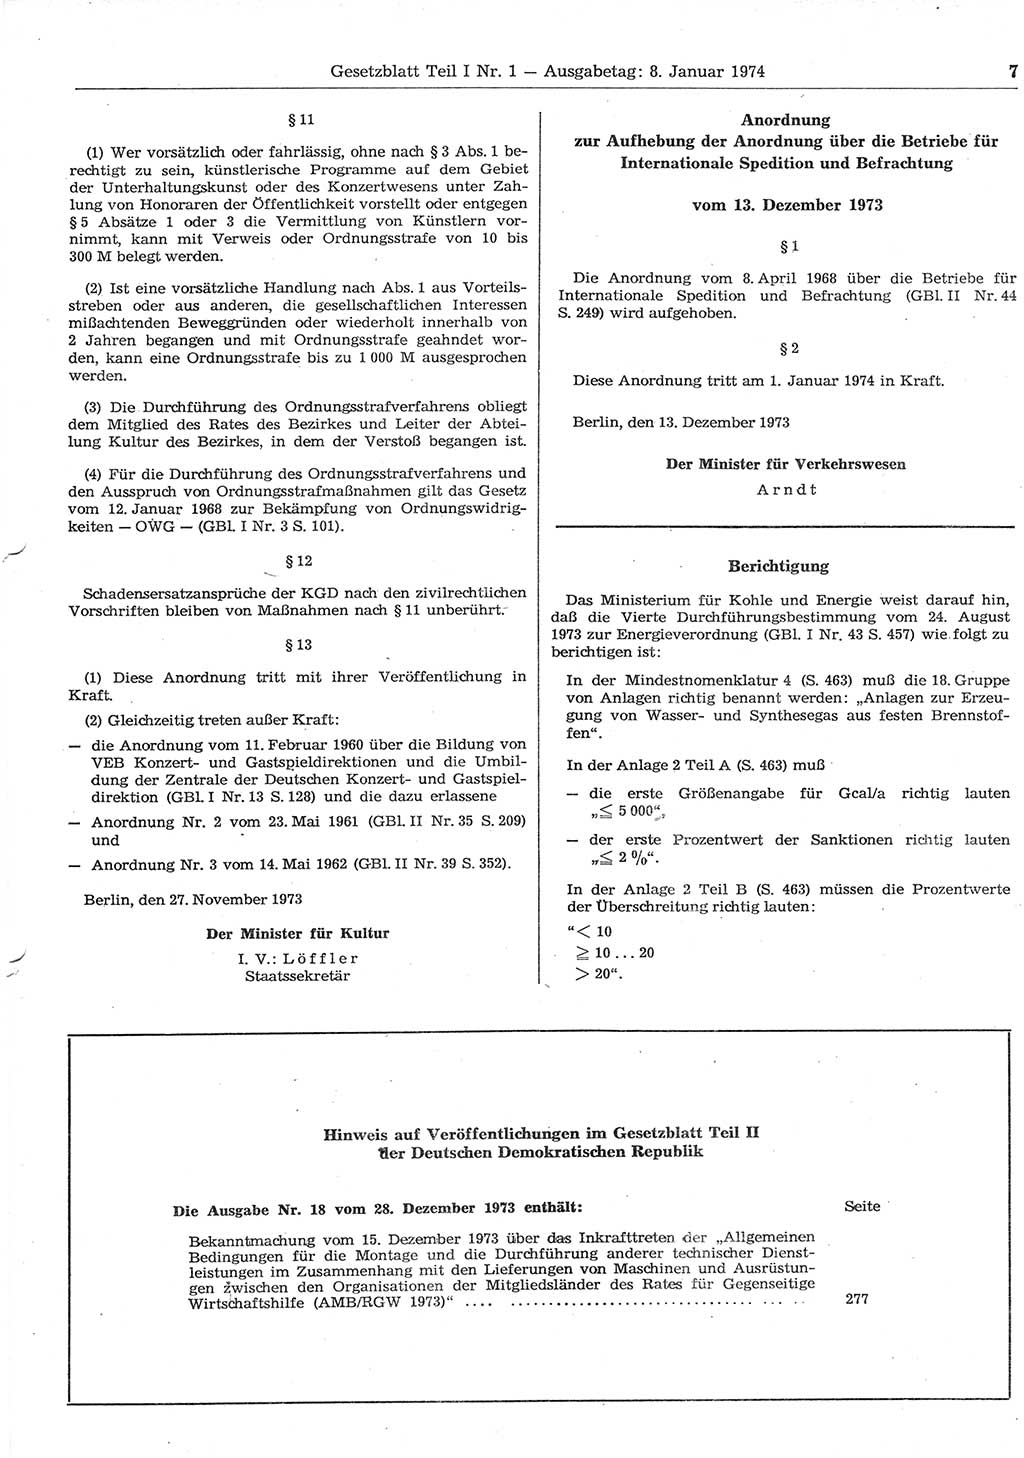 Gesetzblatt (GBl.) der Deutschen Demokratischen Republik (DDR) Teil Ⅰ 1974, Seite 7 (GBl. DDR Ⅰ 1974, S. 7)